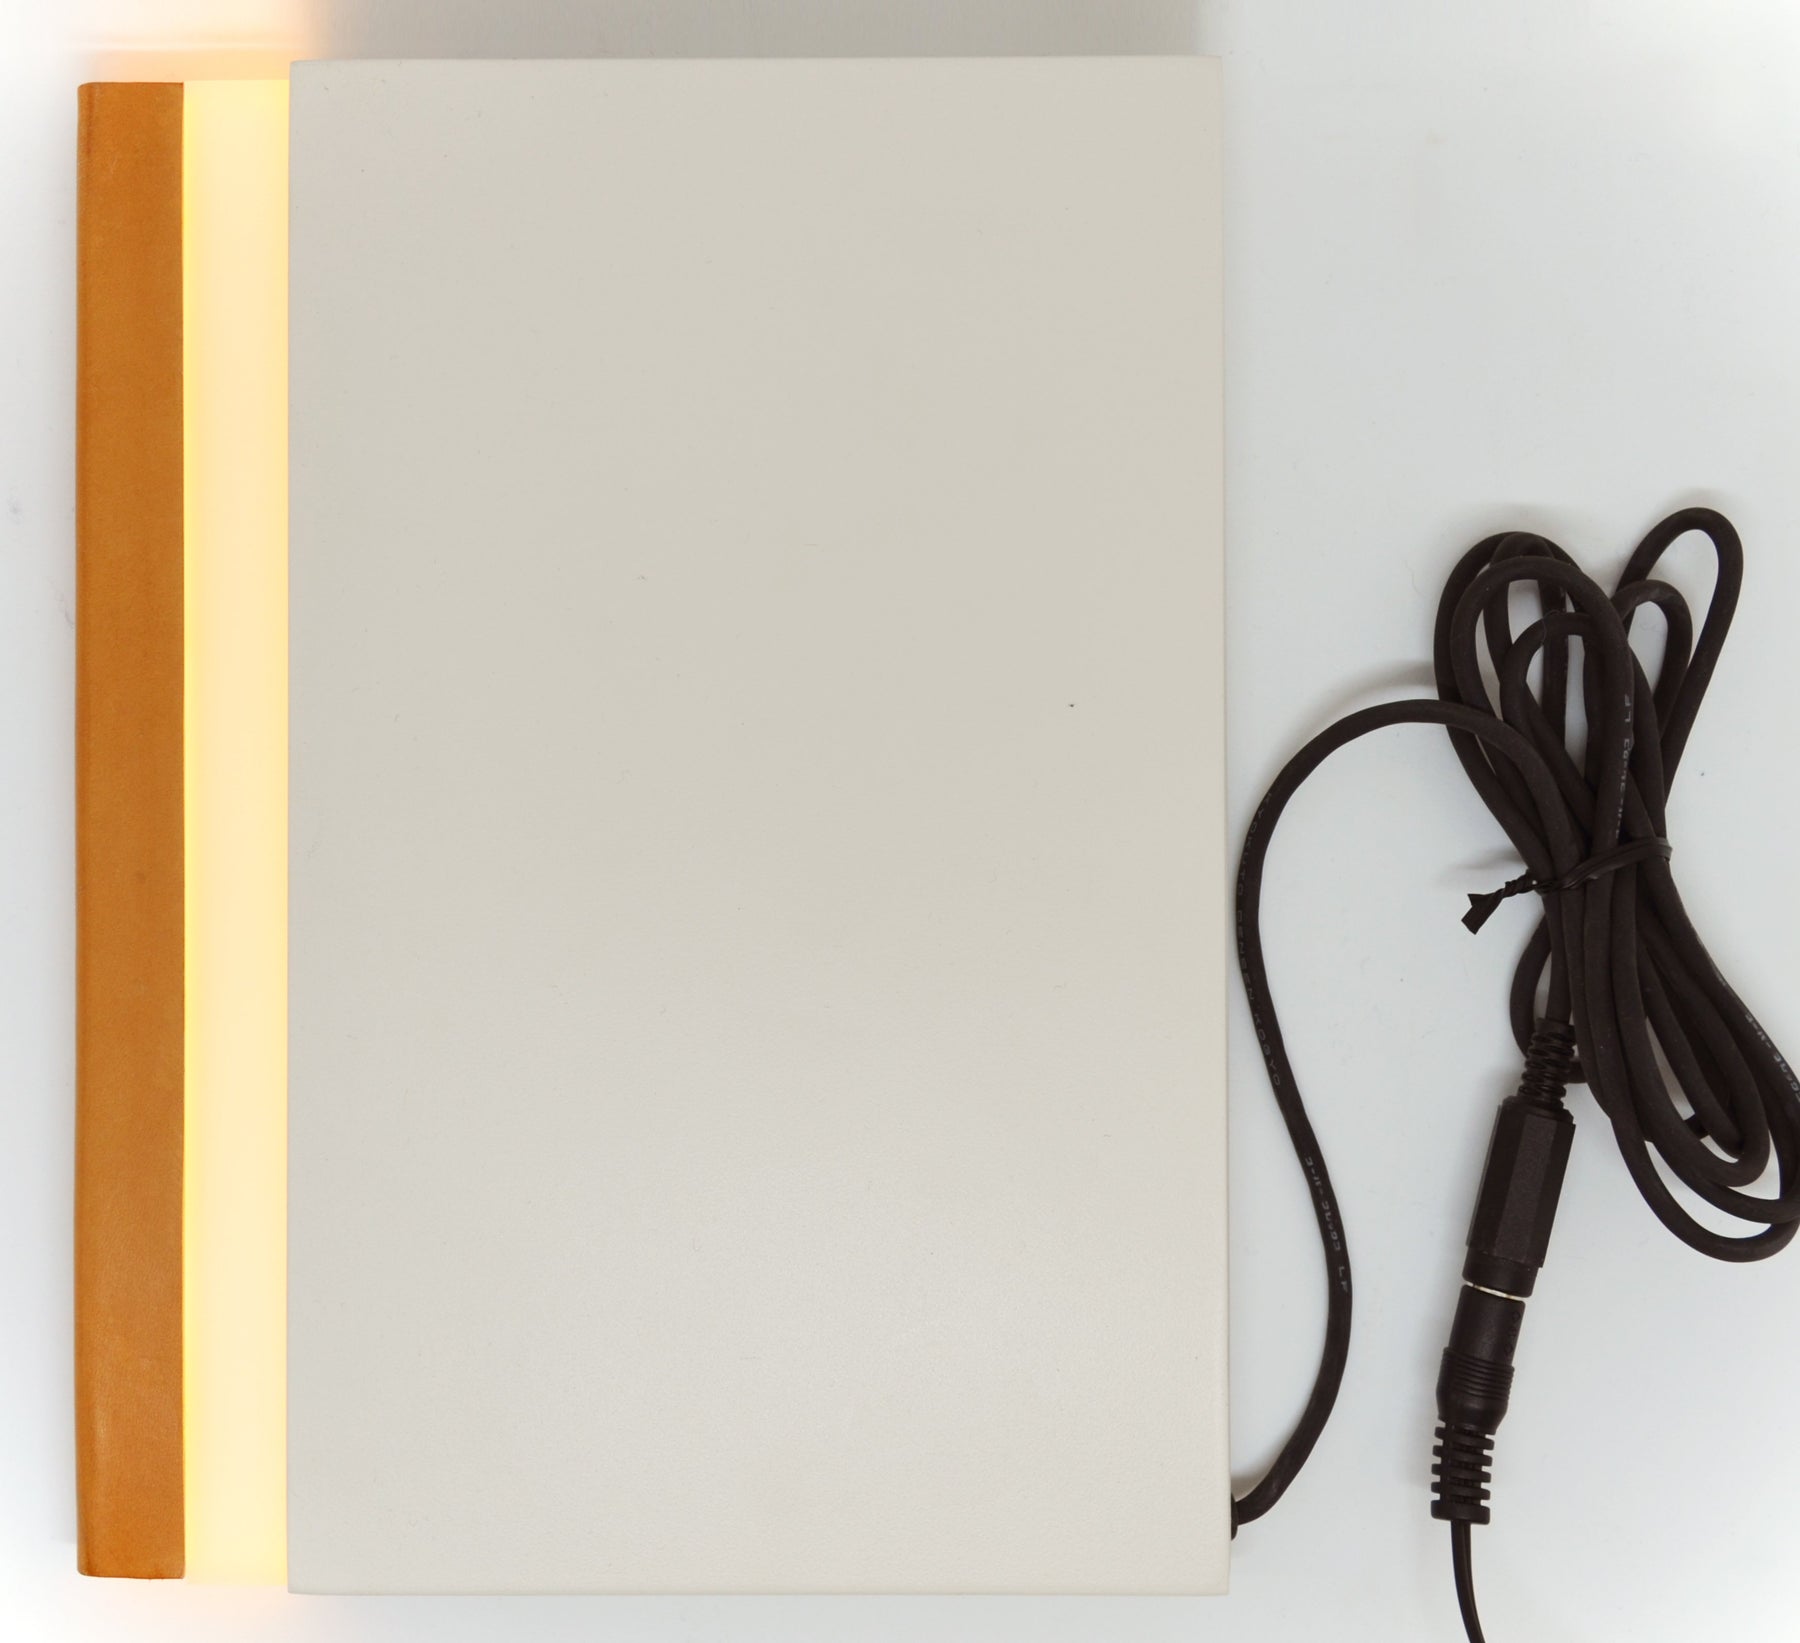 Akii, Akii - Nightbook LED Book Light, 